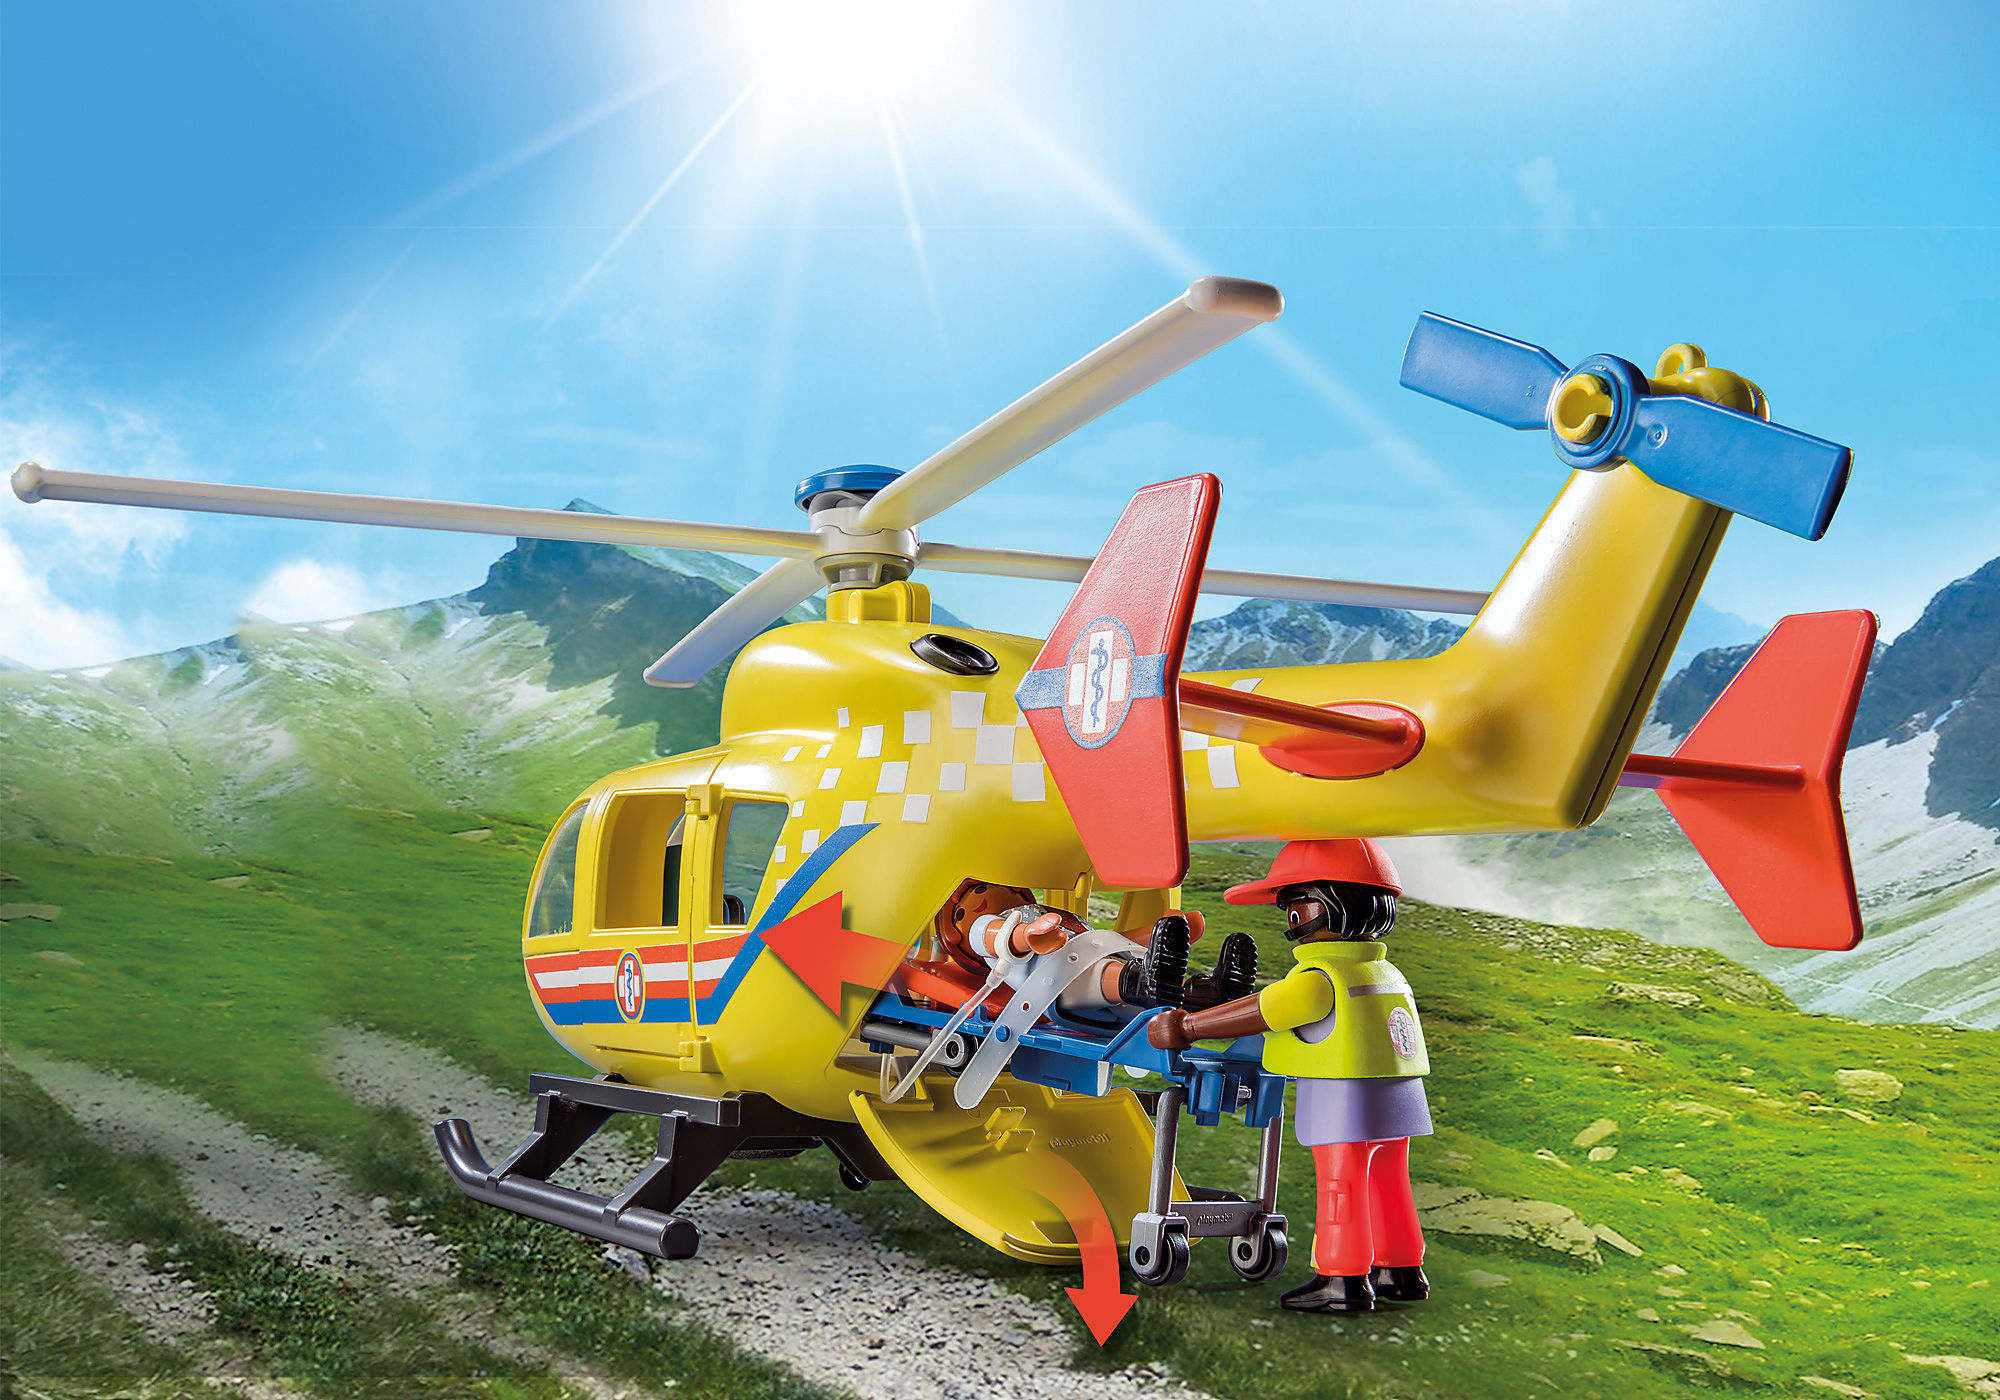 Lot playmobil secours (ambulance, hélicoptère et moto) - Playmobil